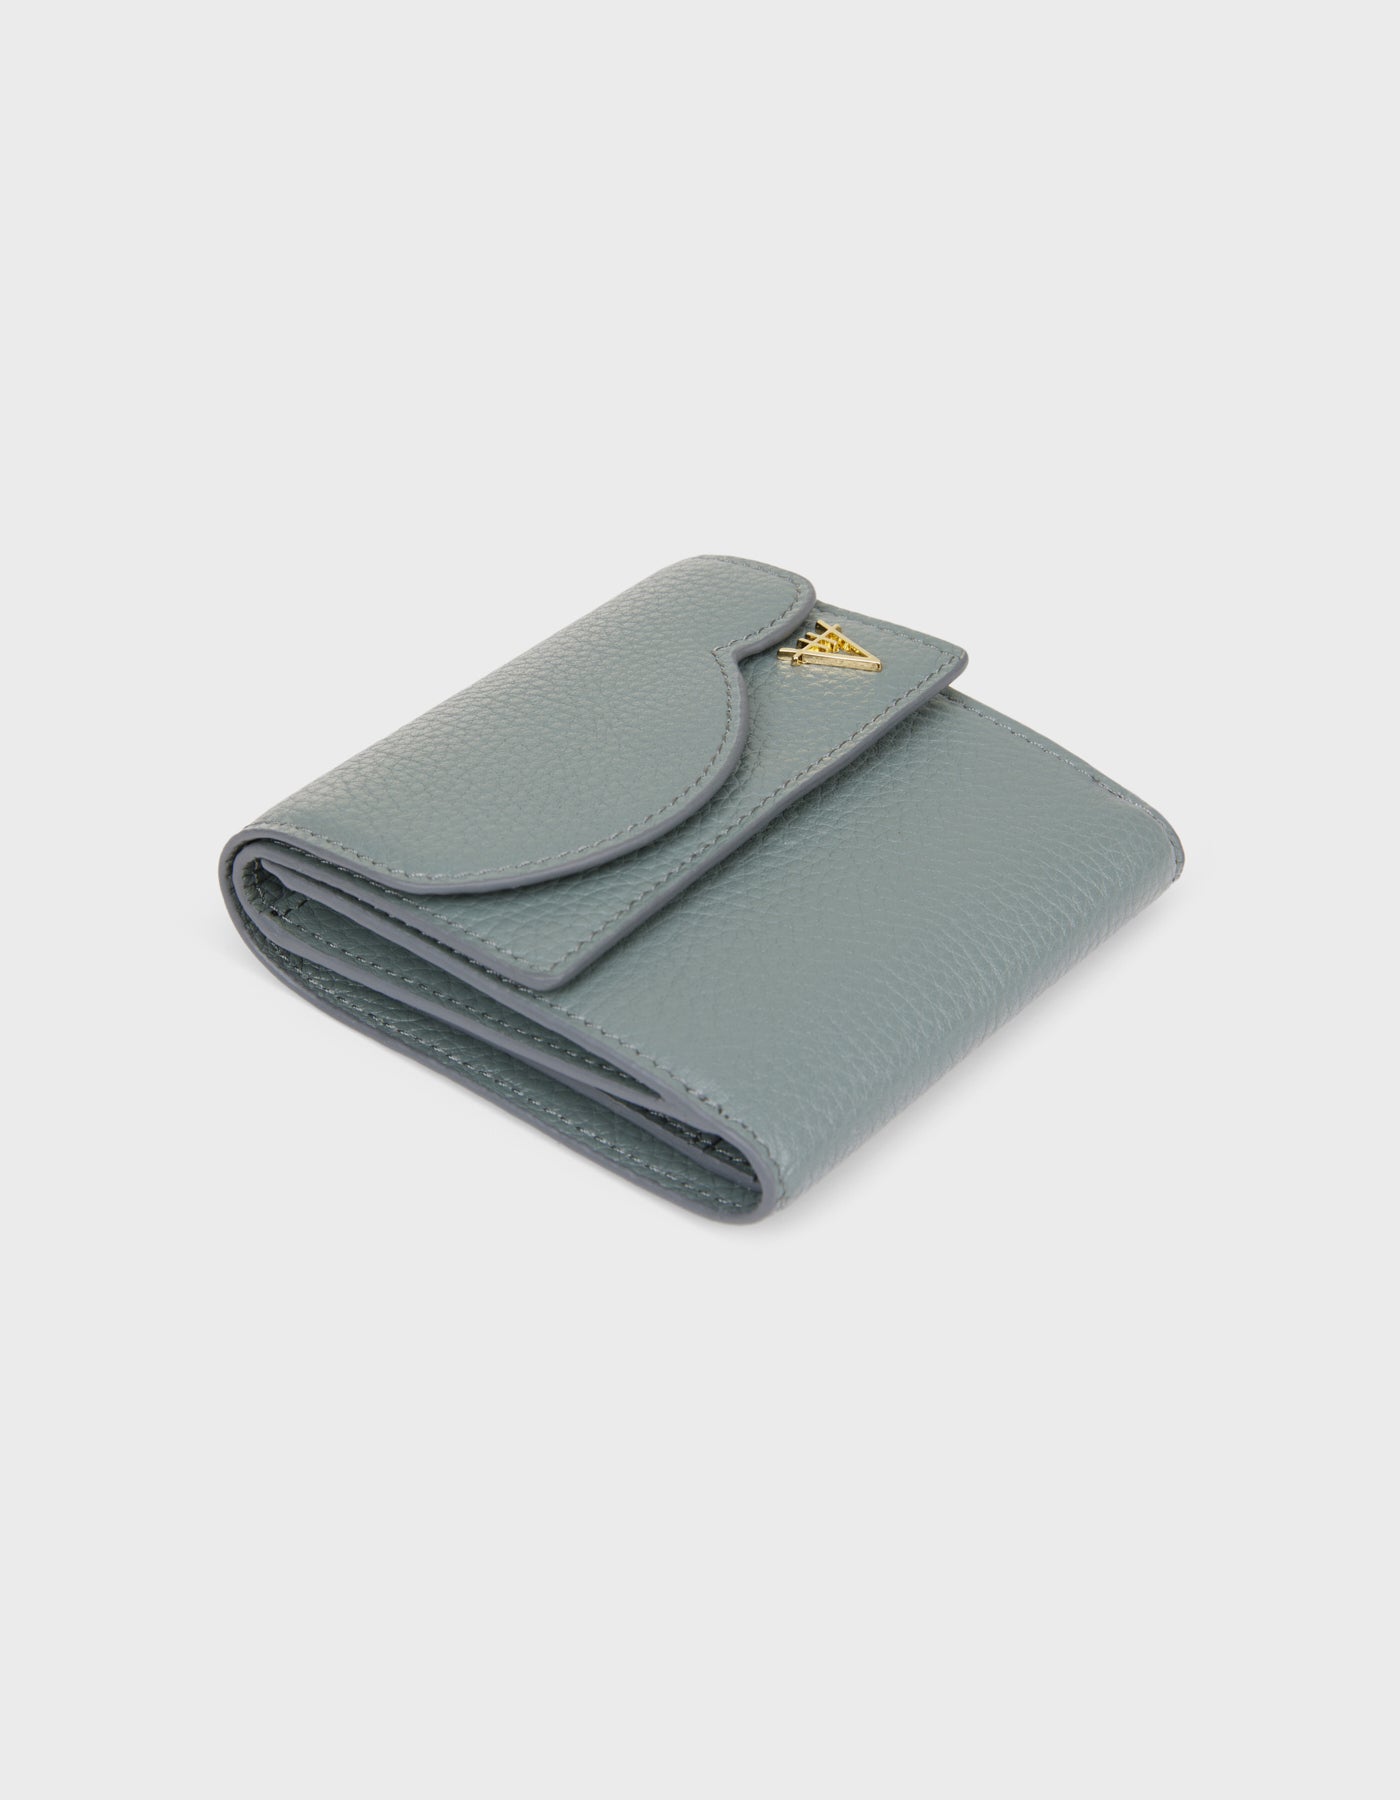 HiVa Atelier - Larus Compact Wallet Dusty Blue